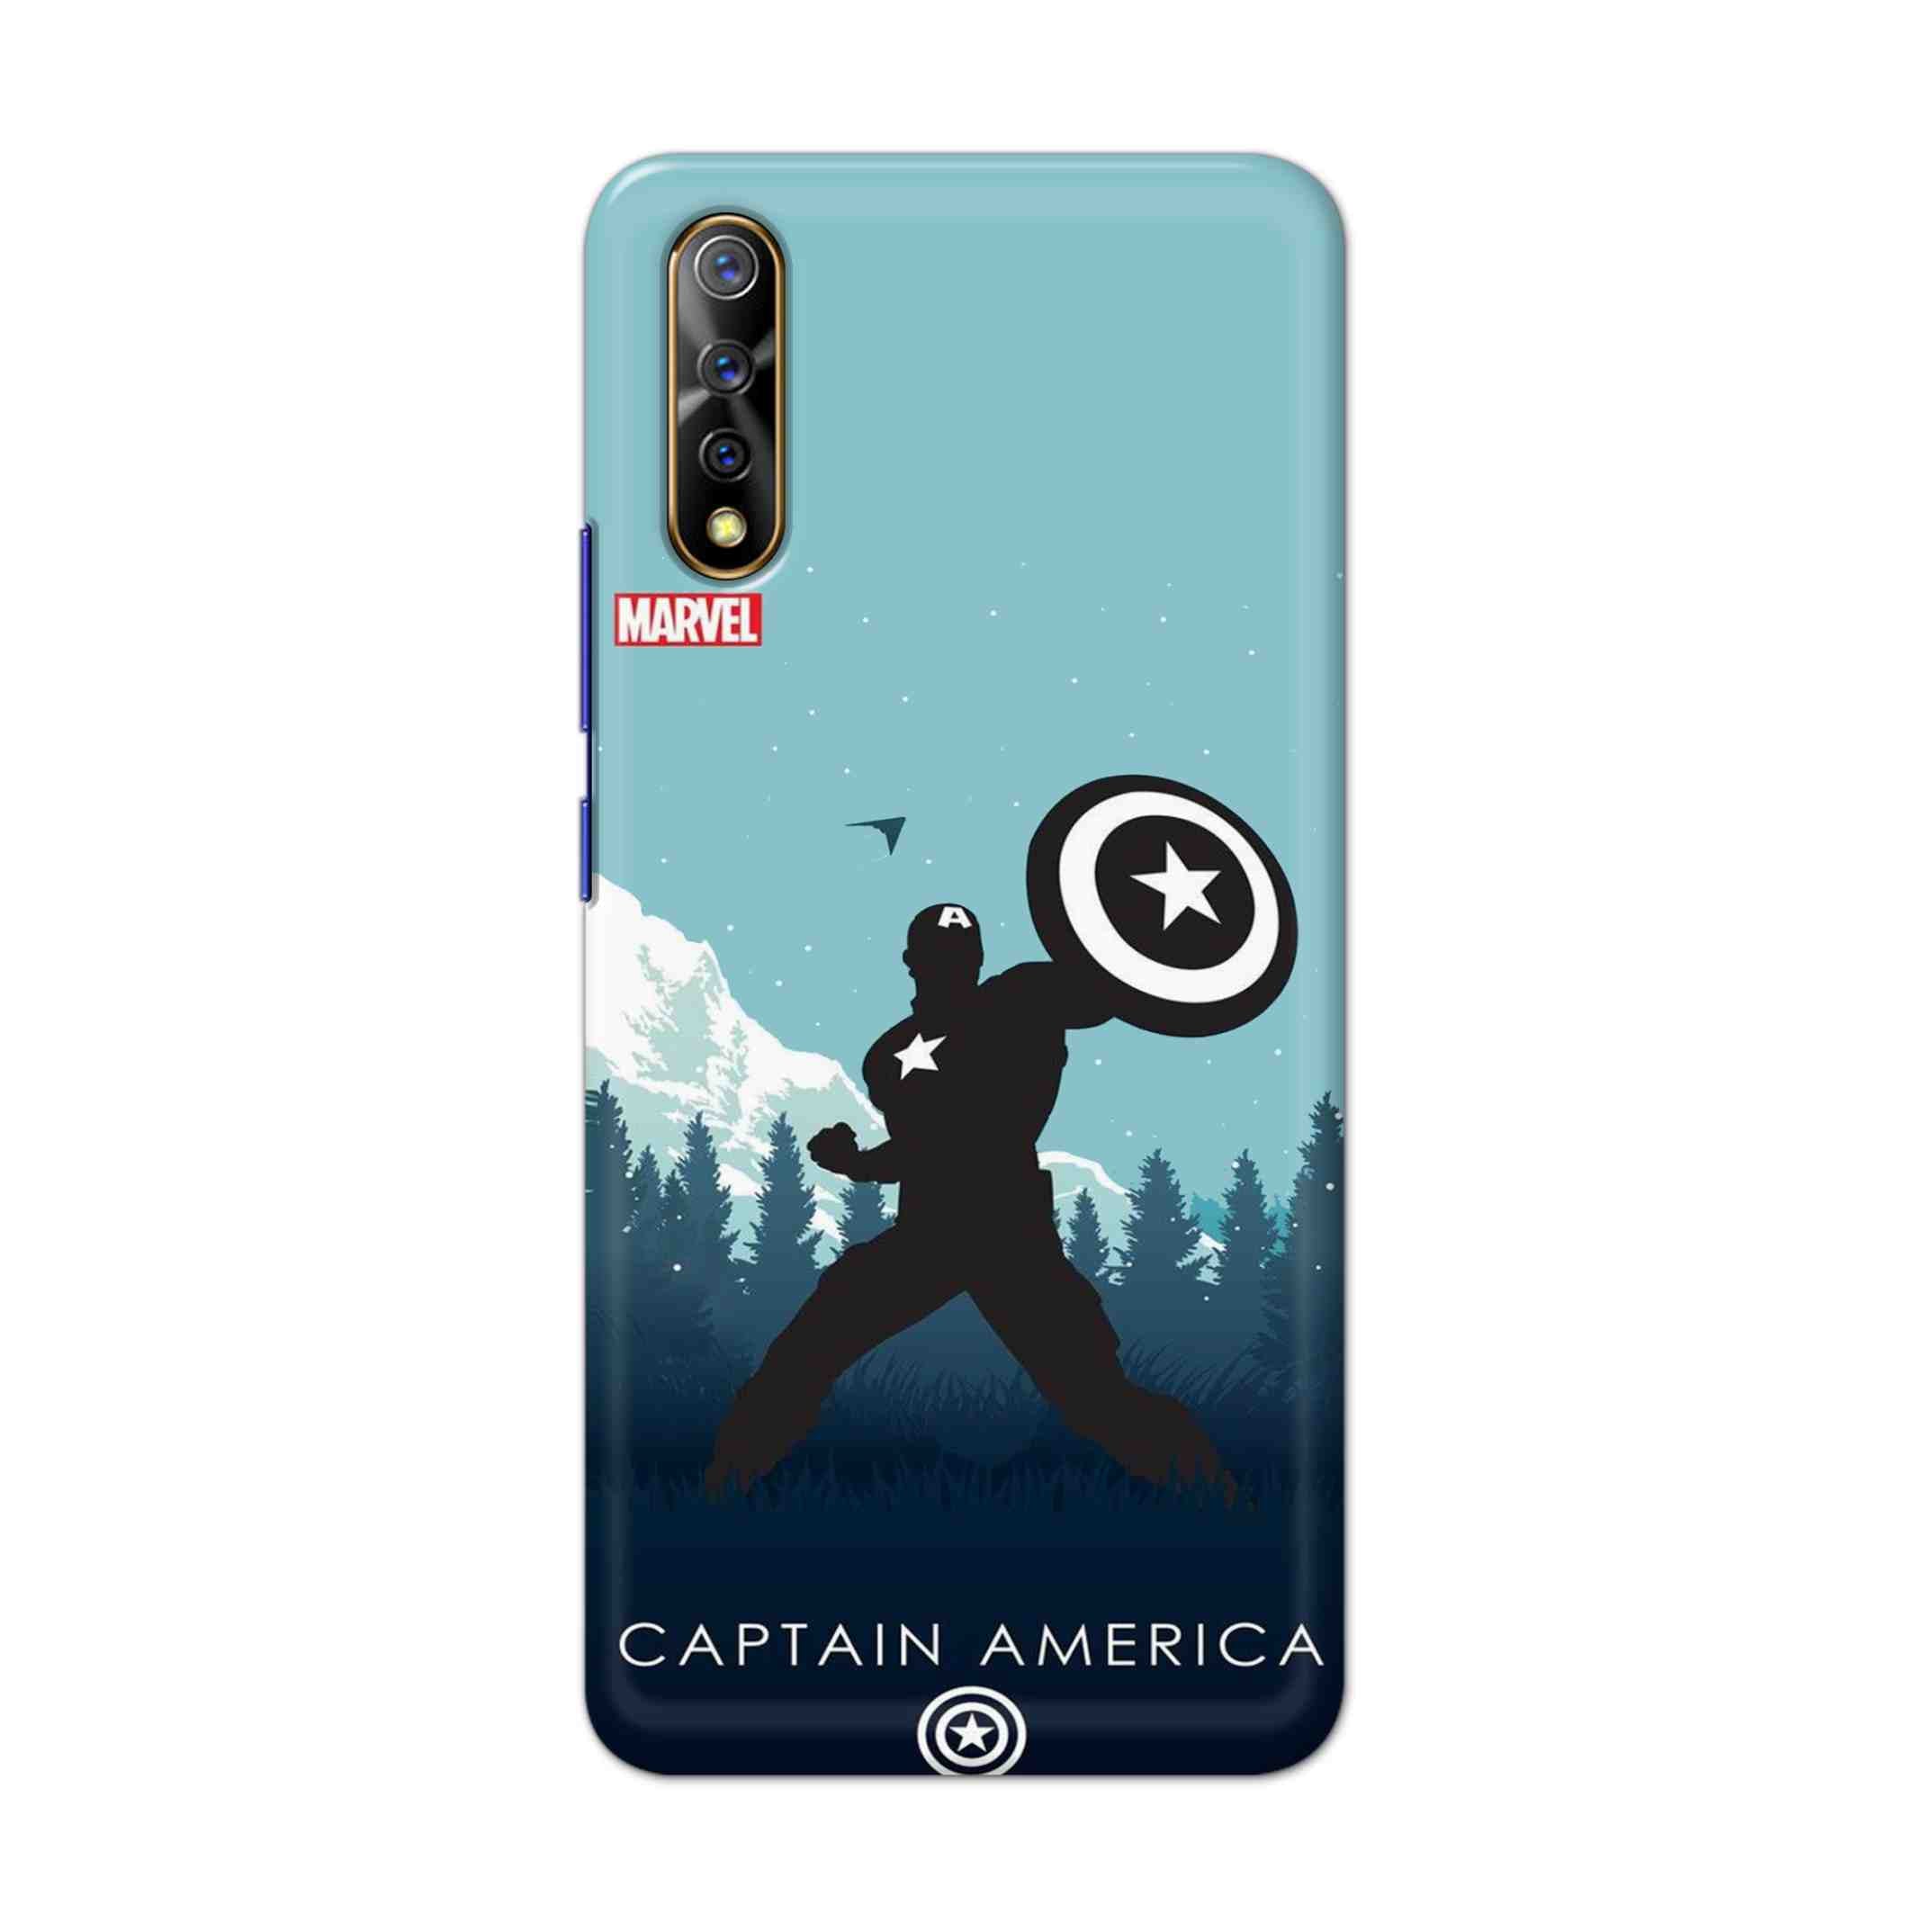 Buy Captain America Hard Back Mobile Phone Case Cover For Vivo S1 / Z1x Online